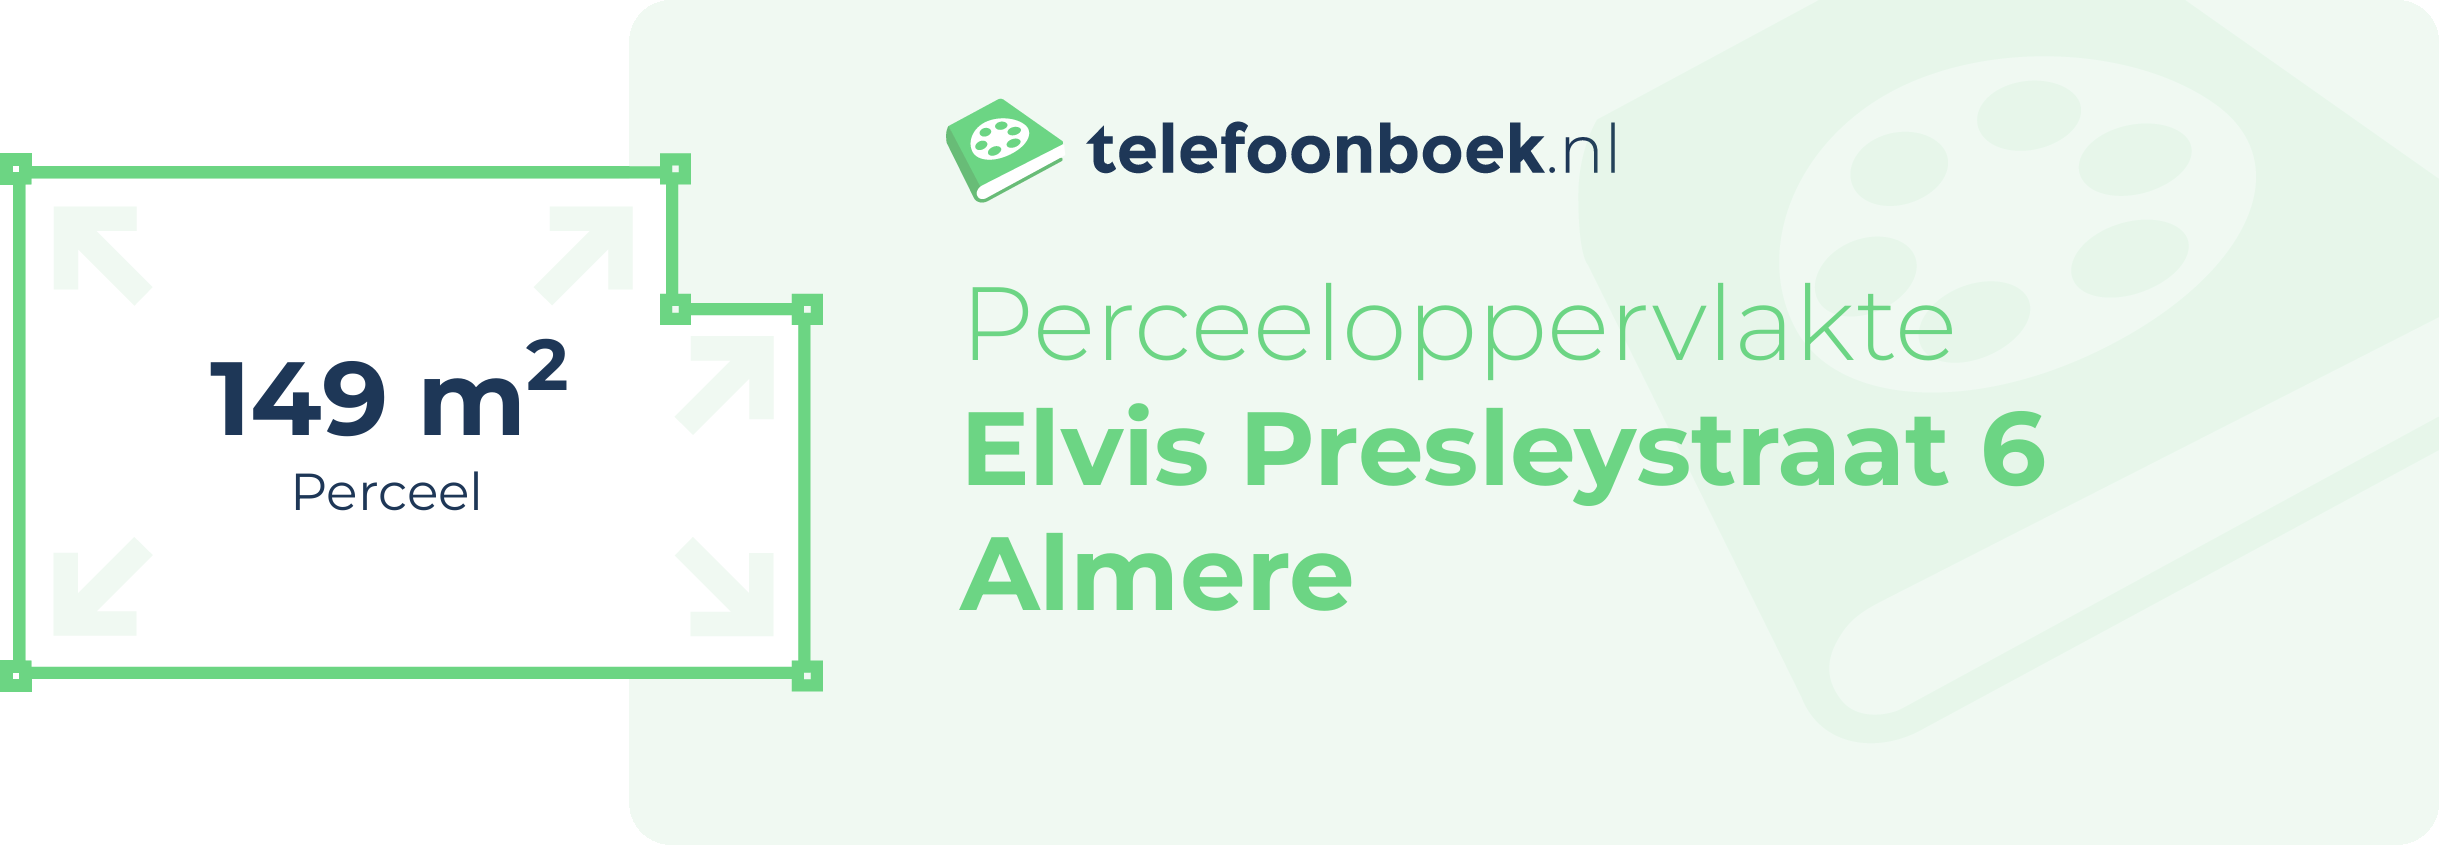 Perceeloppervlakte Elvis Presleystraat 6 Almere